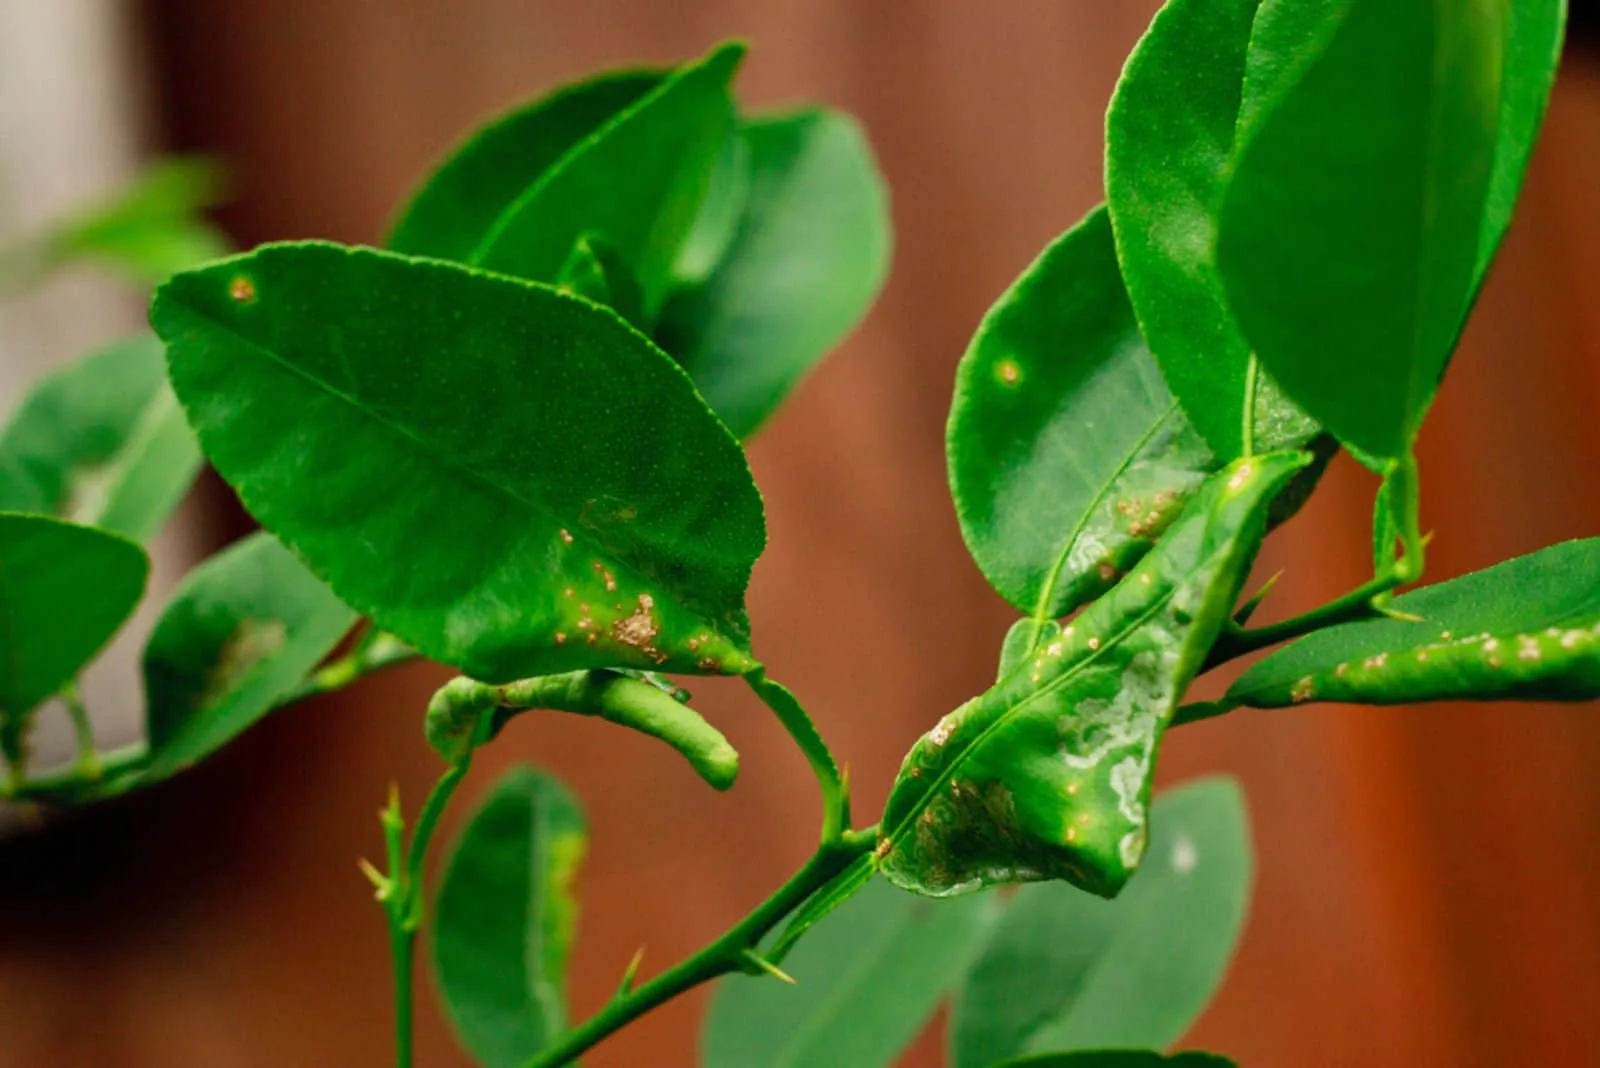 citrus leaf miner damage and Citrus Canker on lime leaves or lemon leaf